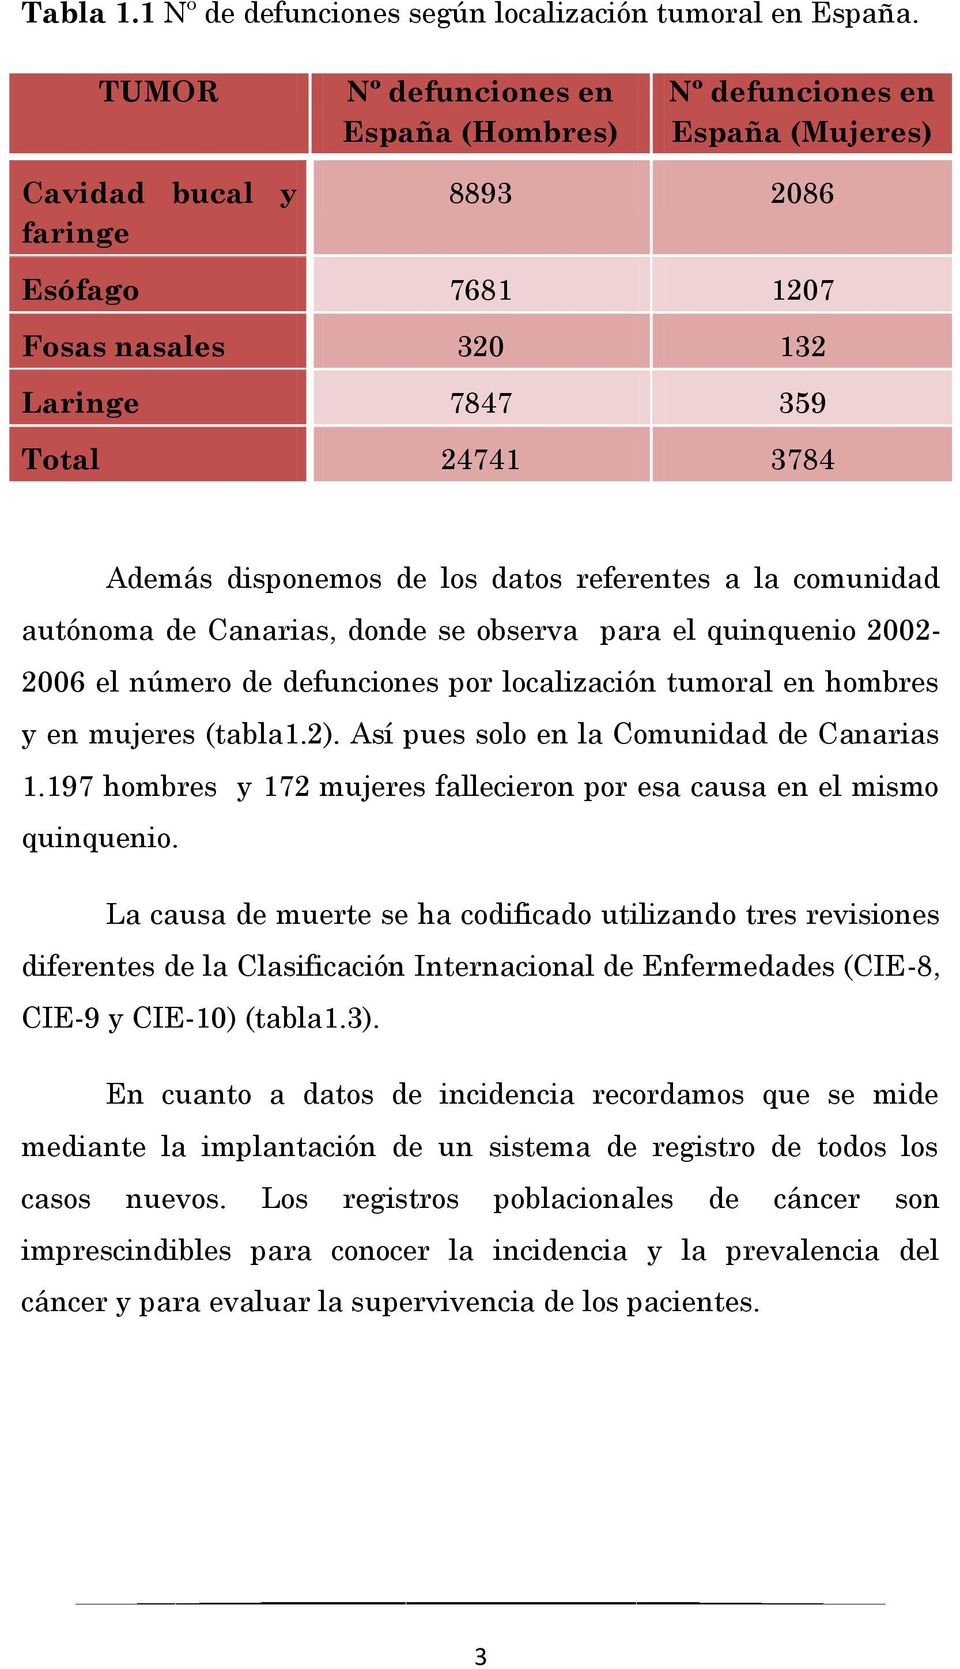 disponemos de los datos referentes a la comunidad autónoma de Canarias, donde se observa para el quinquenio 2002-2006 el número de defunciones por localización tumoral en hombres y en mujeres (tabla1.